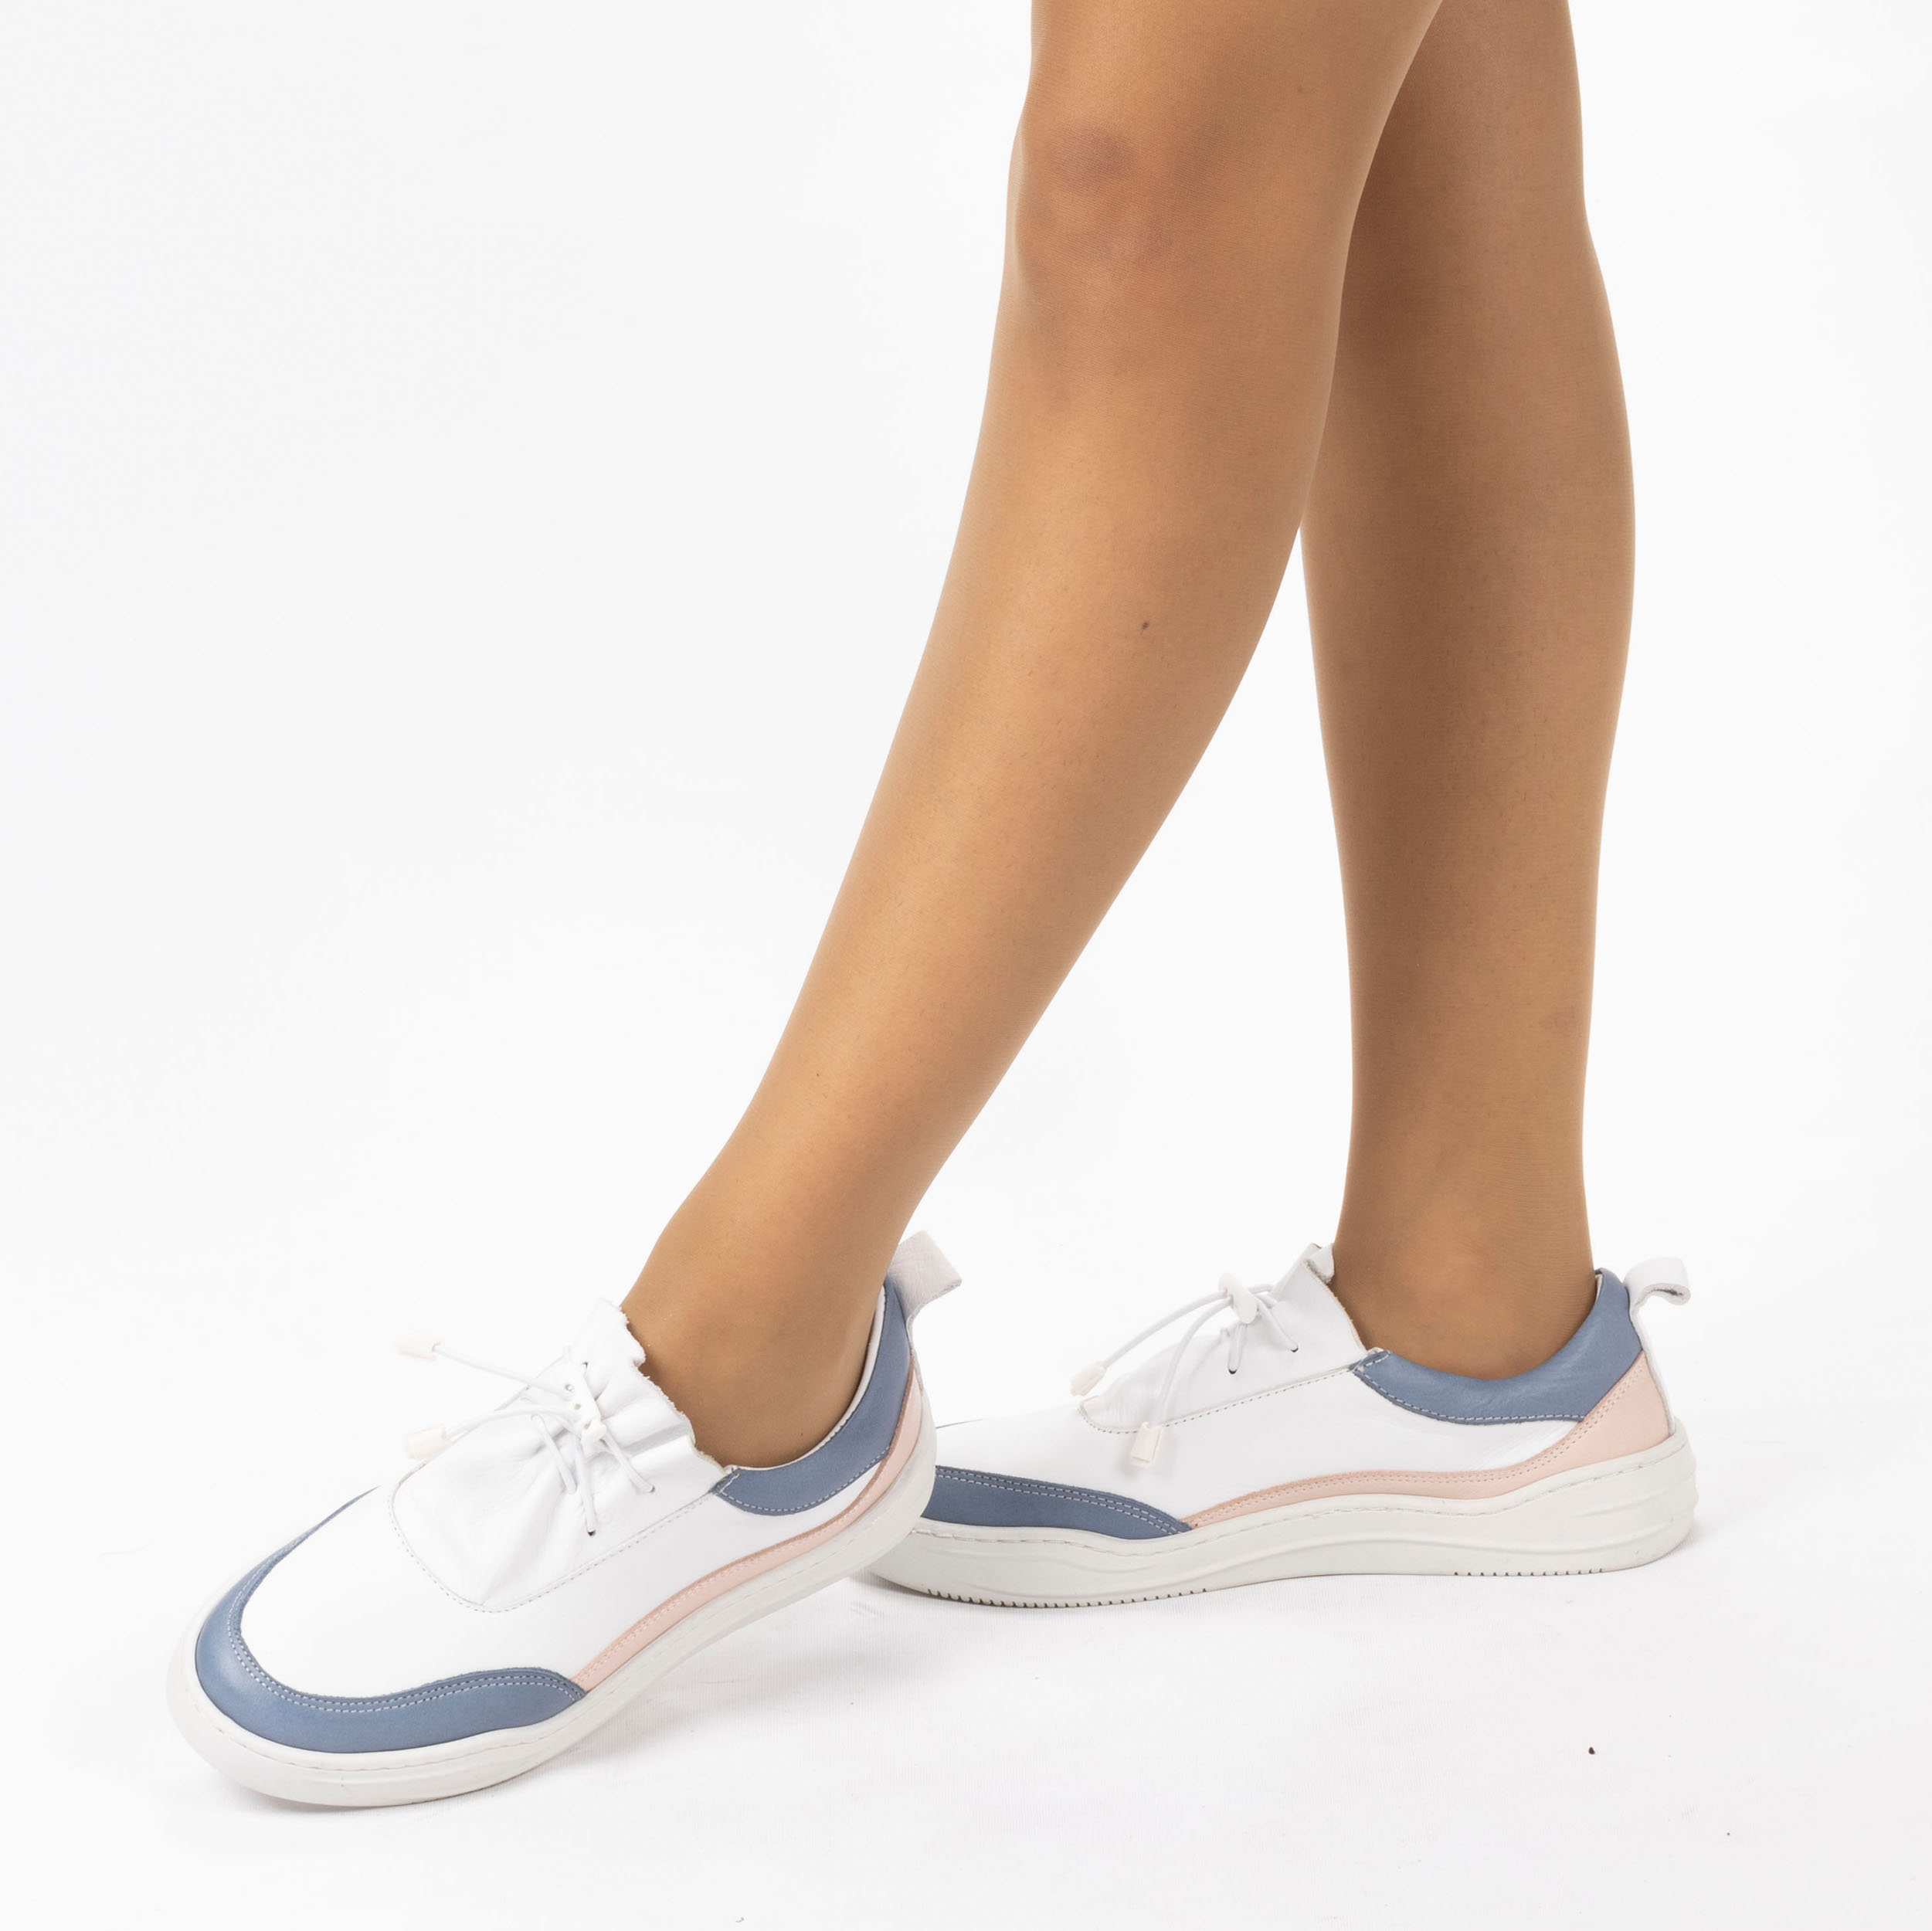 Kadın Hakiki Deri  Günlük Spor Ayakkabı / Sneakers, Renk: Mavi - Pembe, Beden: 40